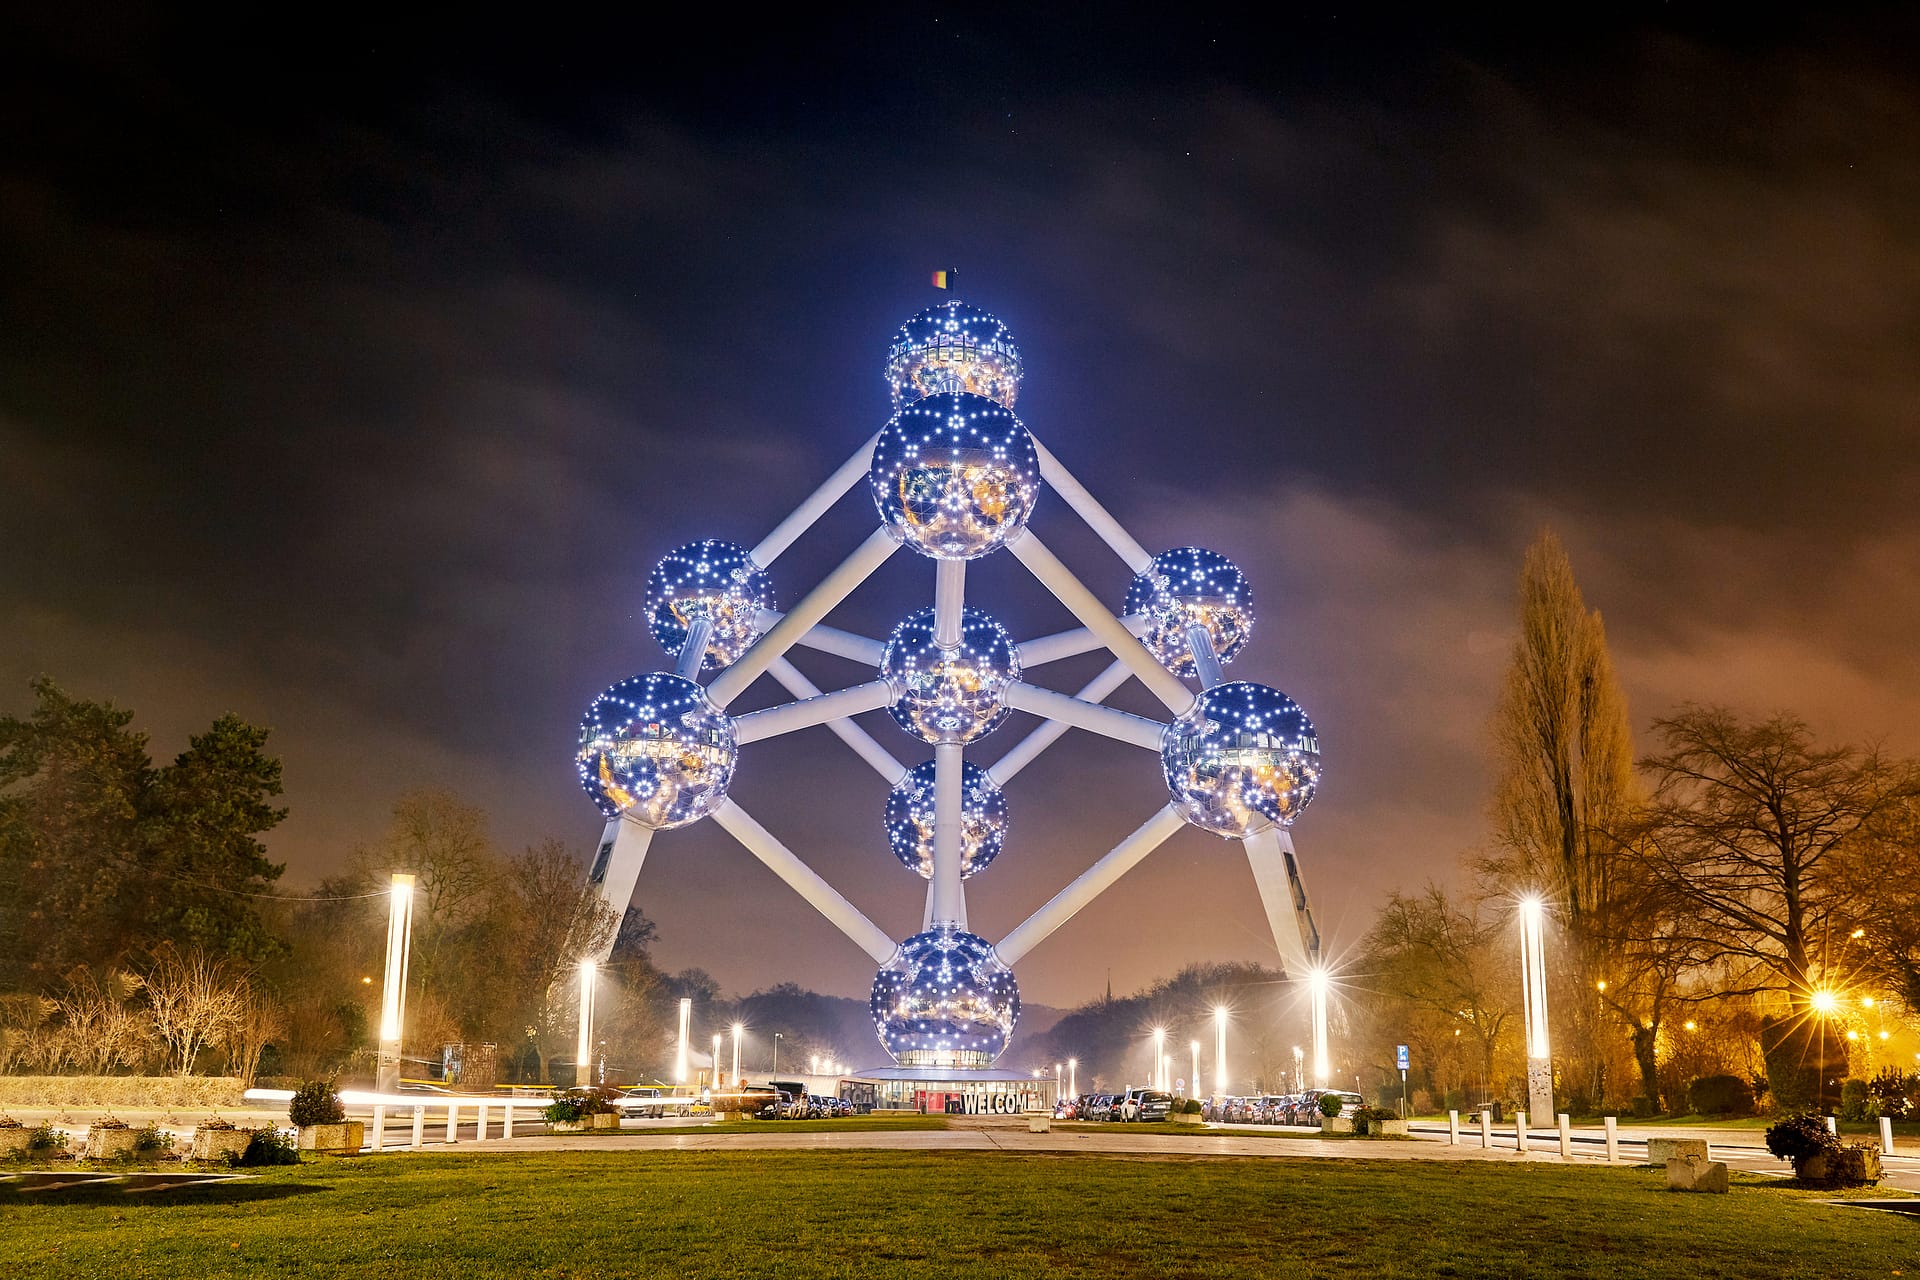 Atomium landmark building at night. Brussels, Belgium